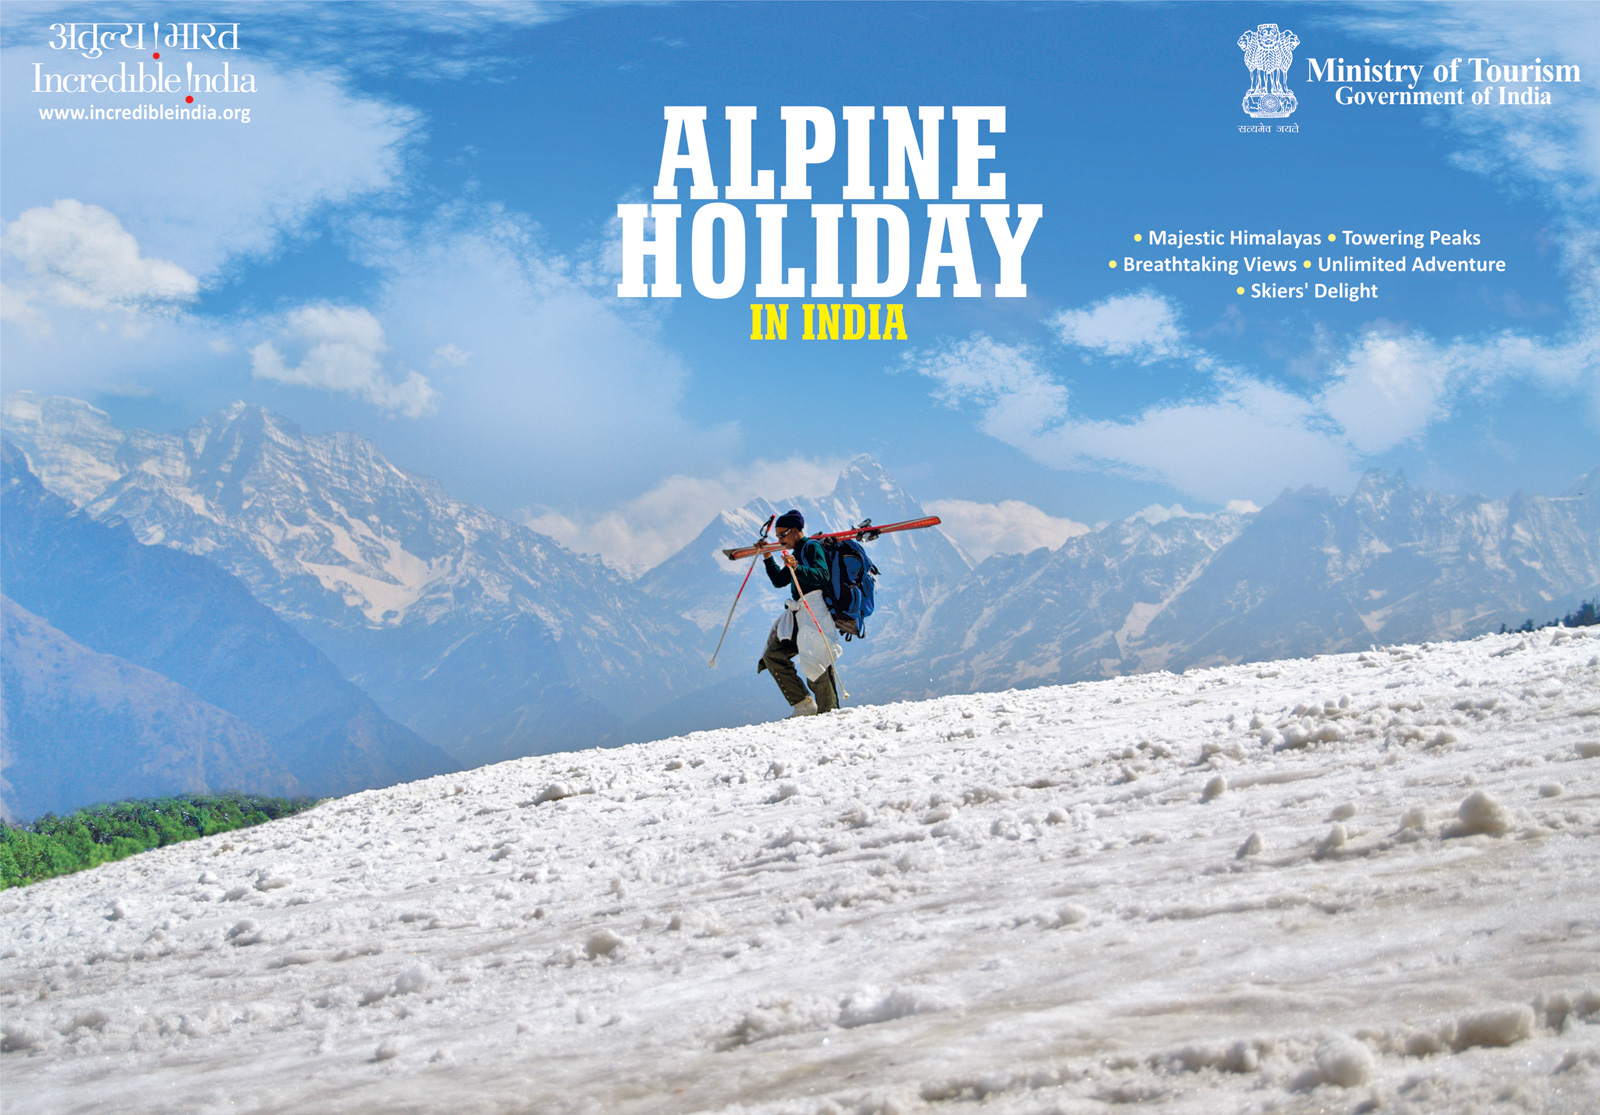 Adventure без рекламы. Реклама дестинаций в туризме. Incredible India реклама. Туристические дестинации реклама это. Alpine Tourism.